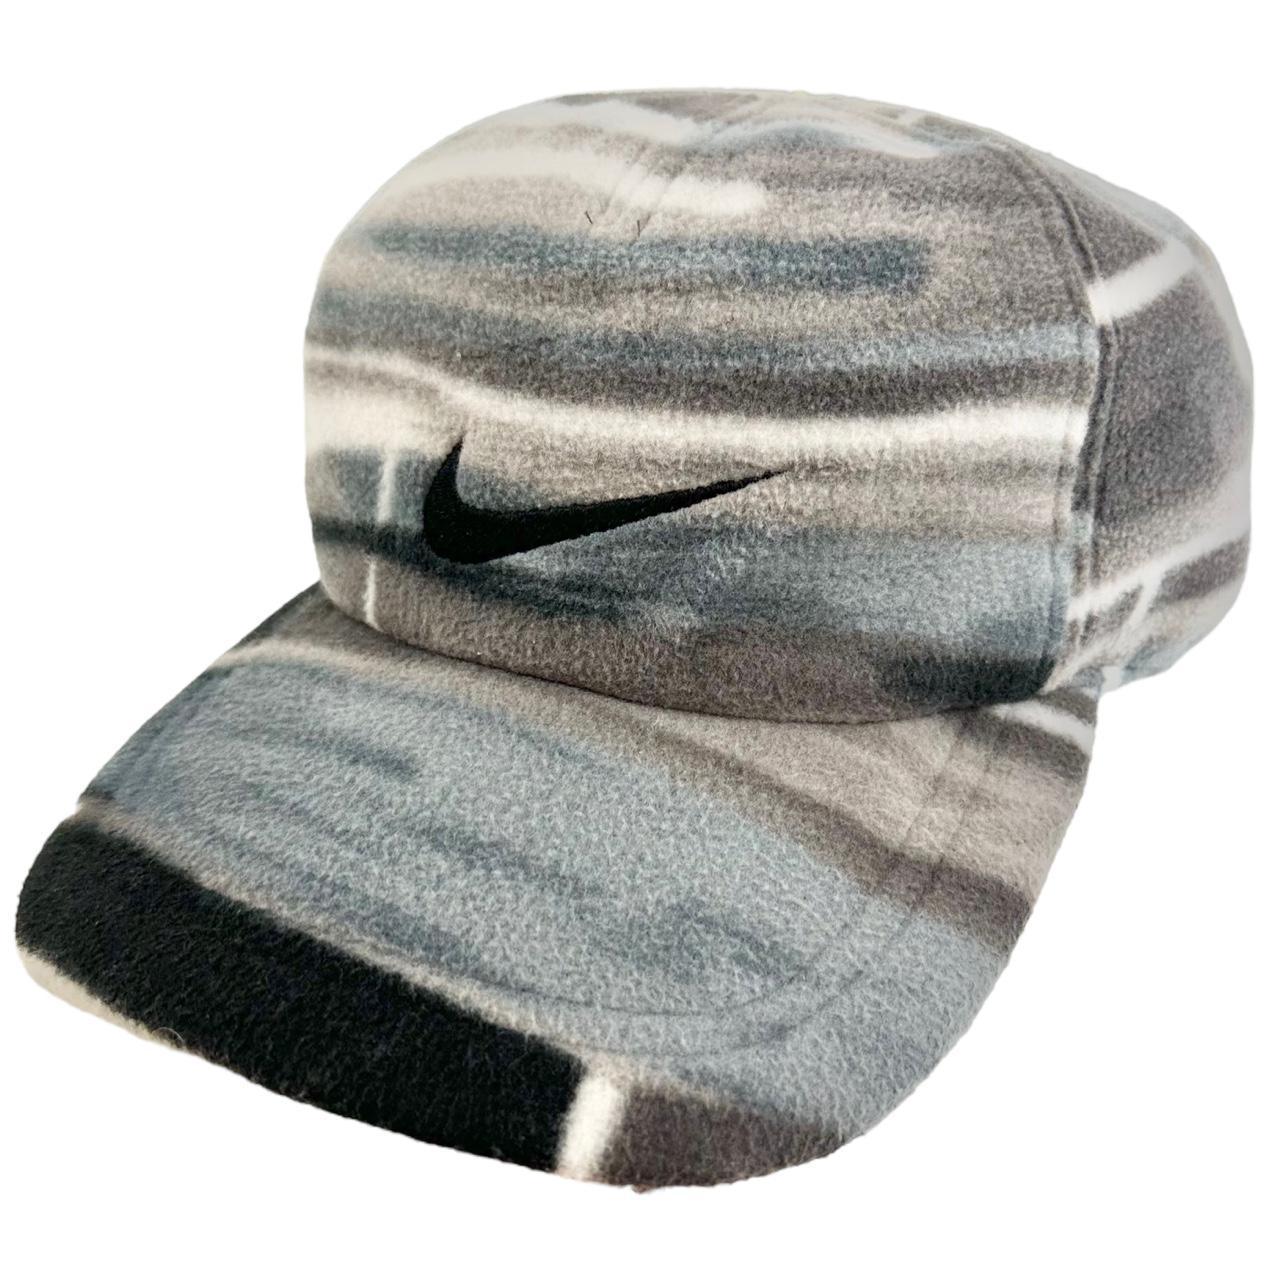 Vintage Nike ACG Fleece Pattern Hat - Known Source